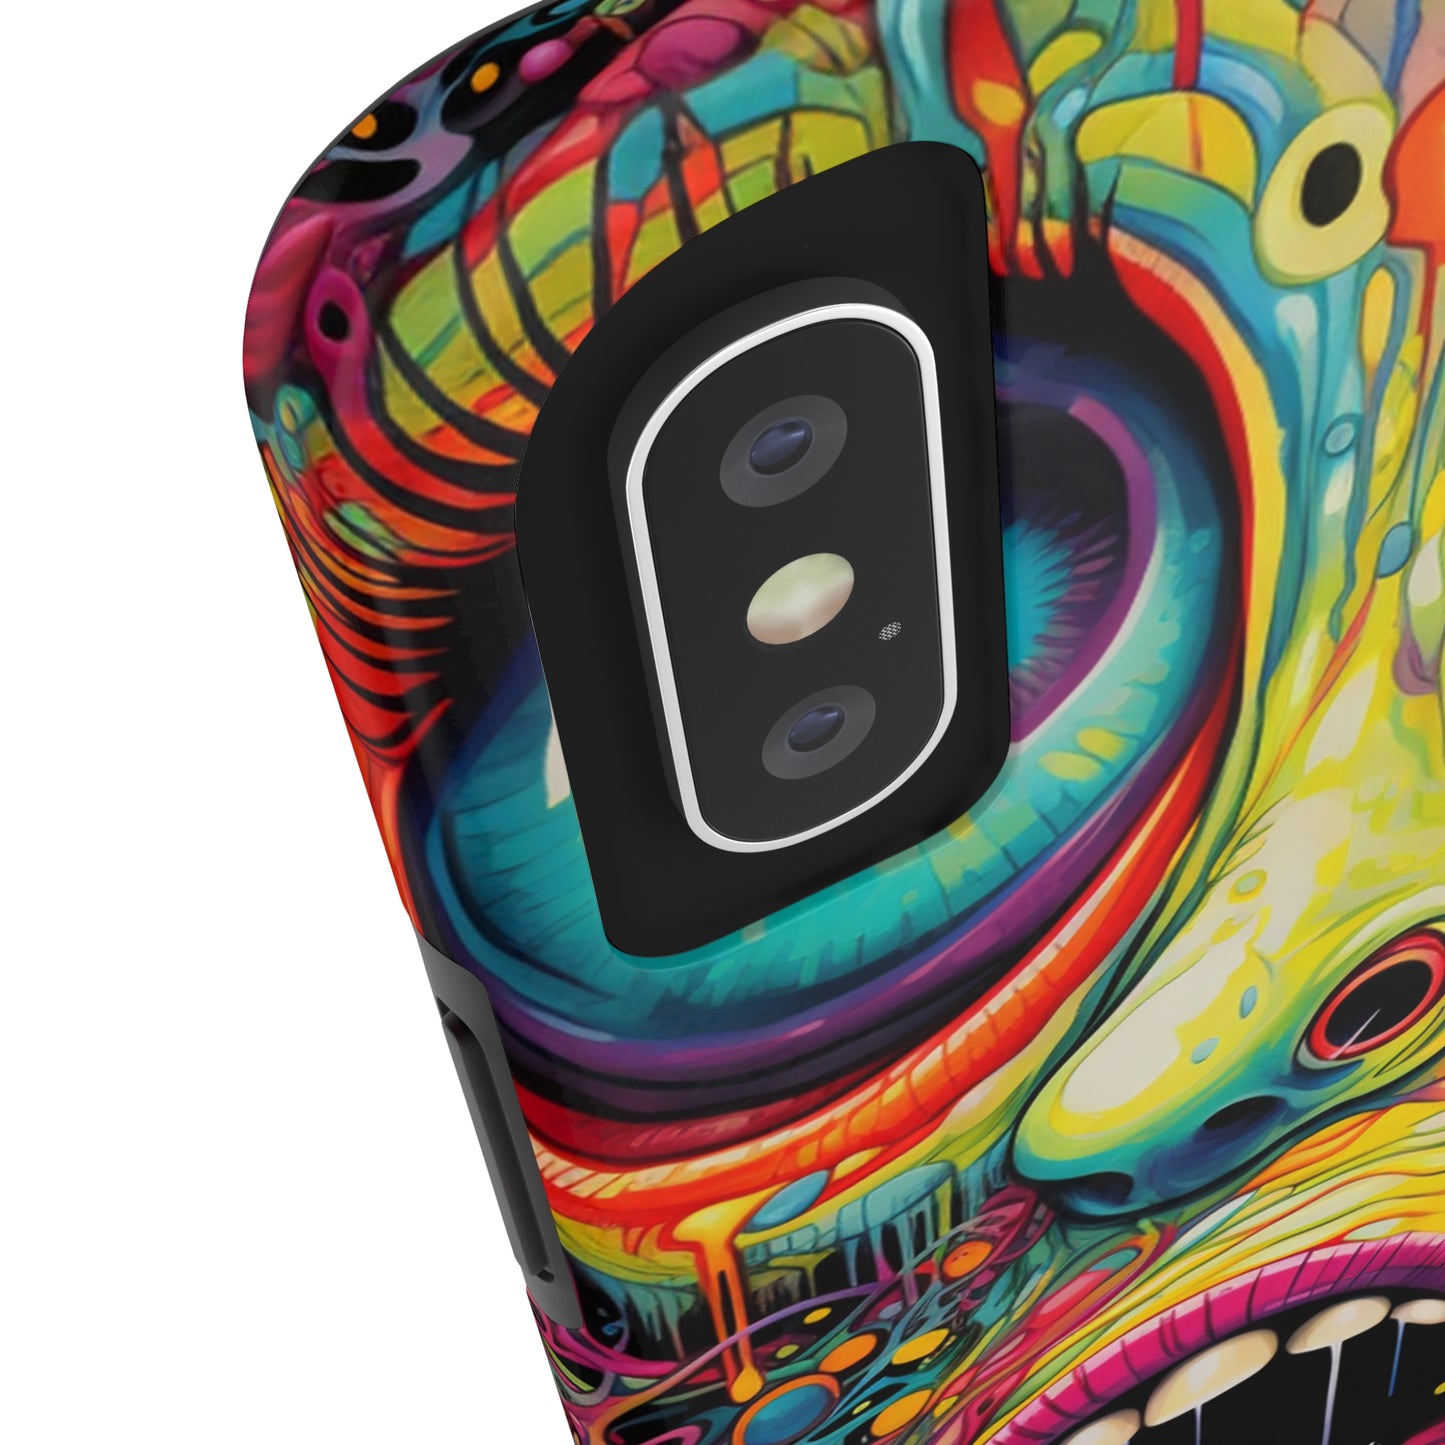 Trippy Hippie Acid Drop: Vibrant Swirls & Dazzling Colors | Tough iPhone Case